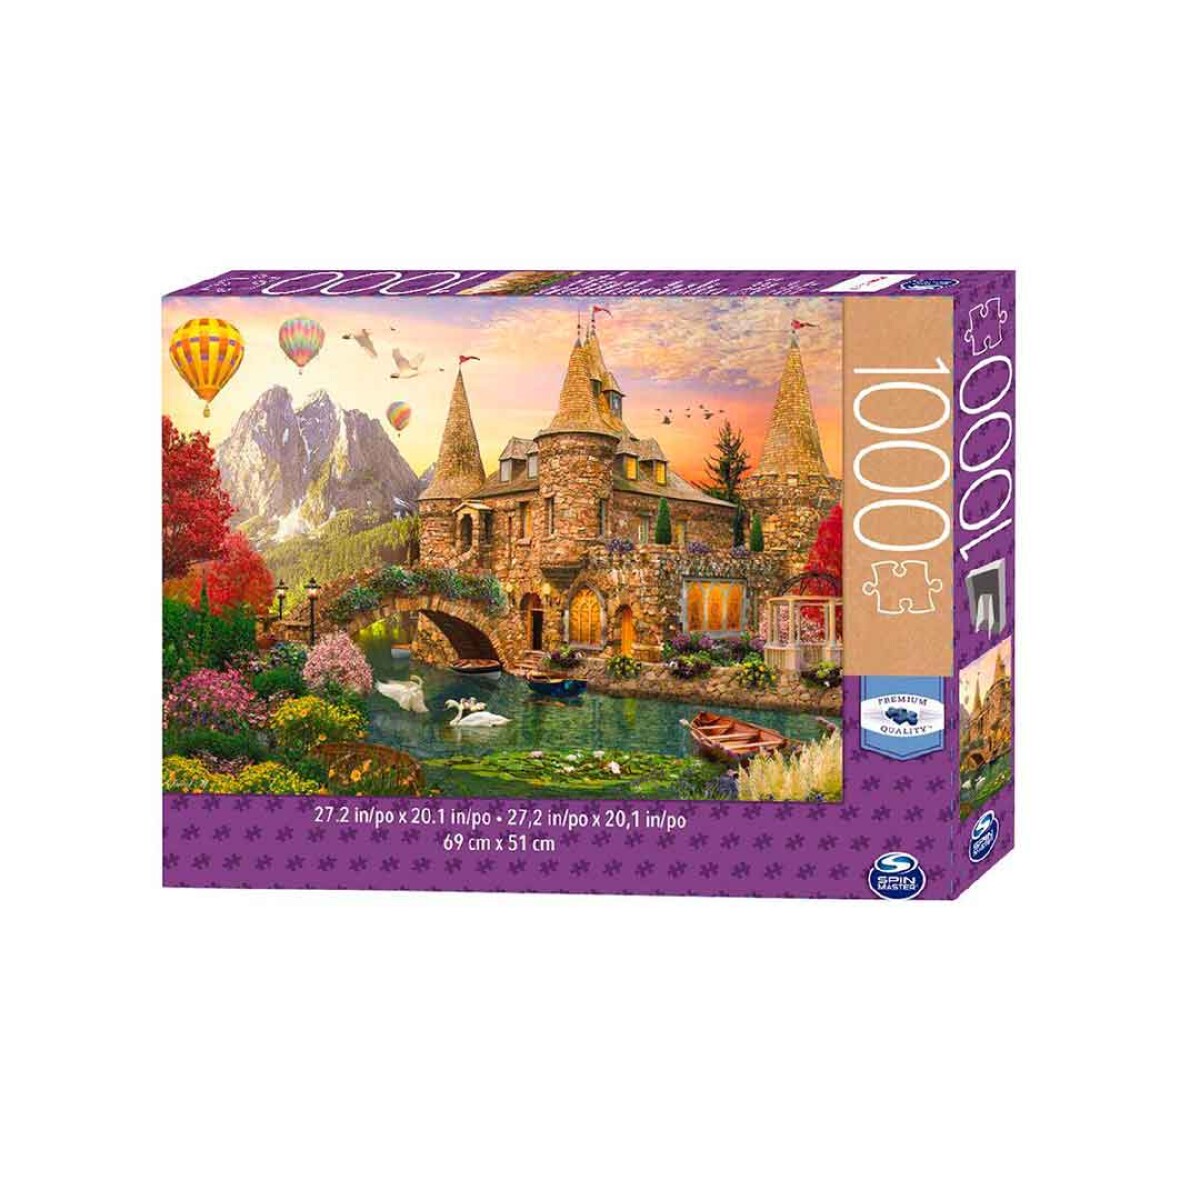 Puzzle Castillo Cuento de adas 1000 piezas - 001 